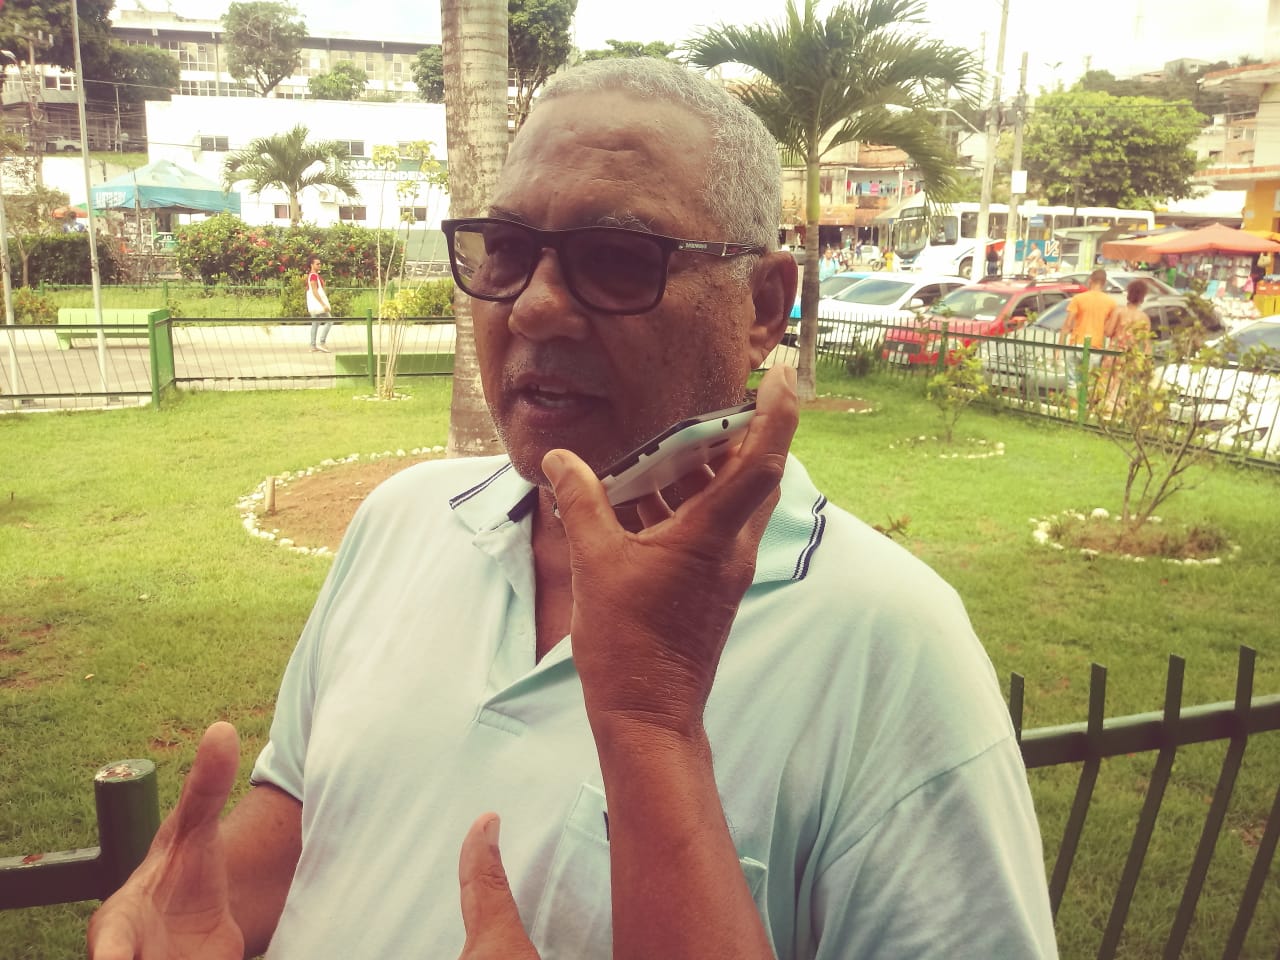 “Joel tem que vender o passe dele mais caro”, dispara presidente do PT de Simões Filho